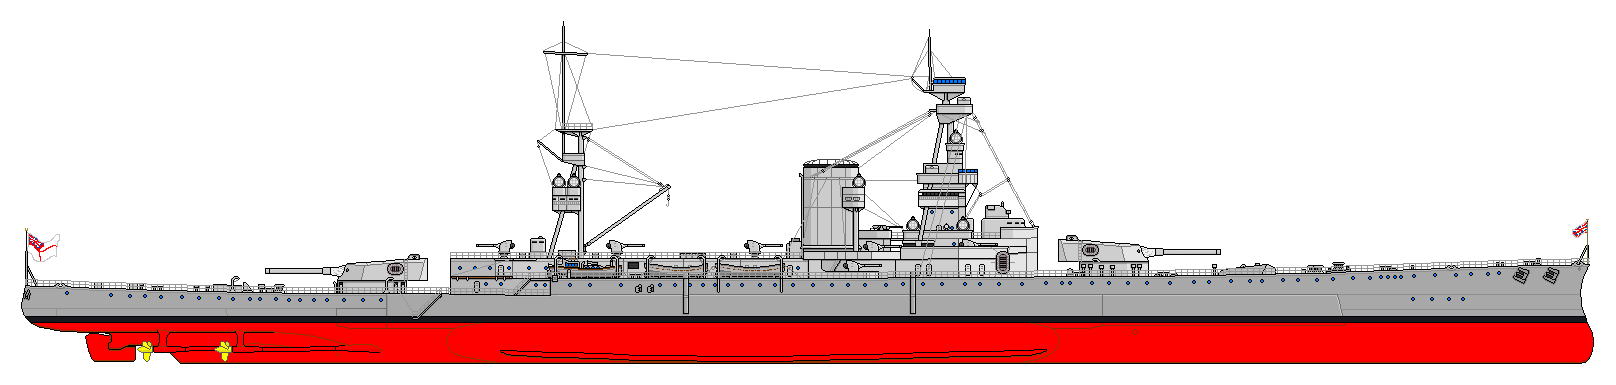 HMS_Furious_1916.png